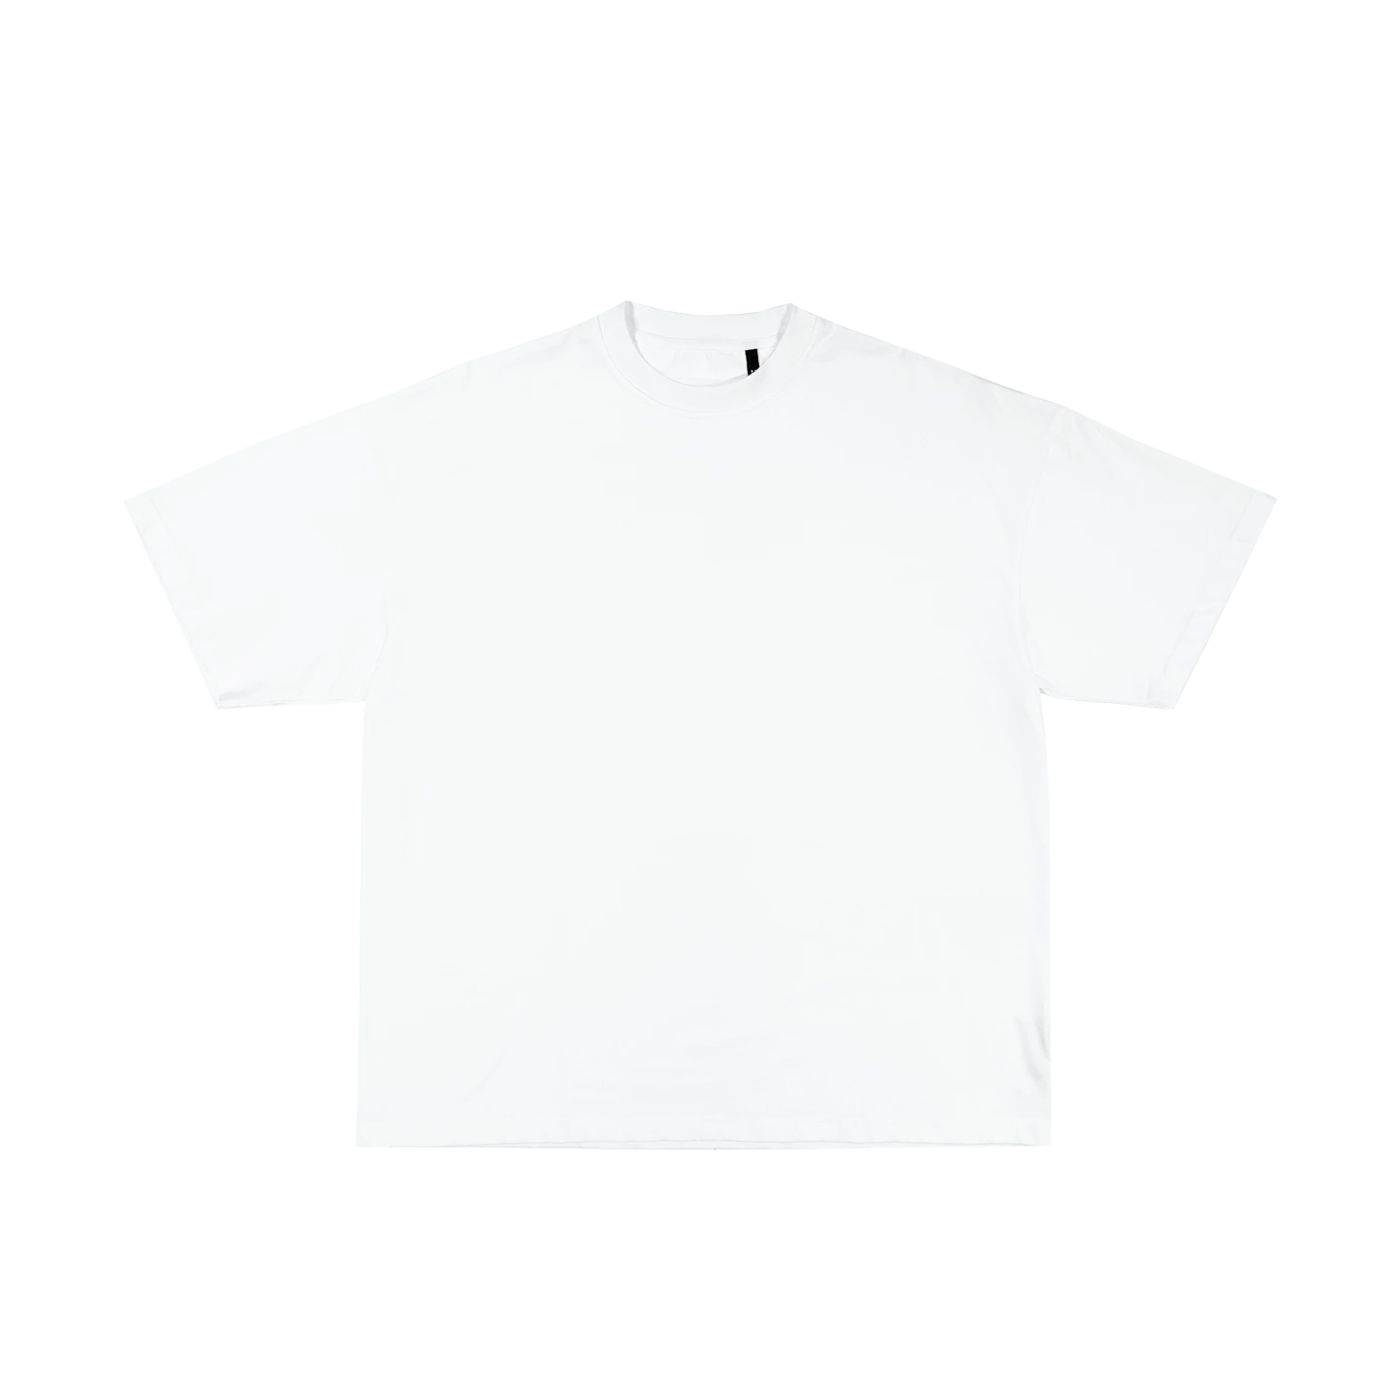 "T-shirt blanc classique à manches longues en coton, idéal pour personnalisation sur prynt.shop."